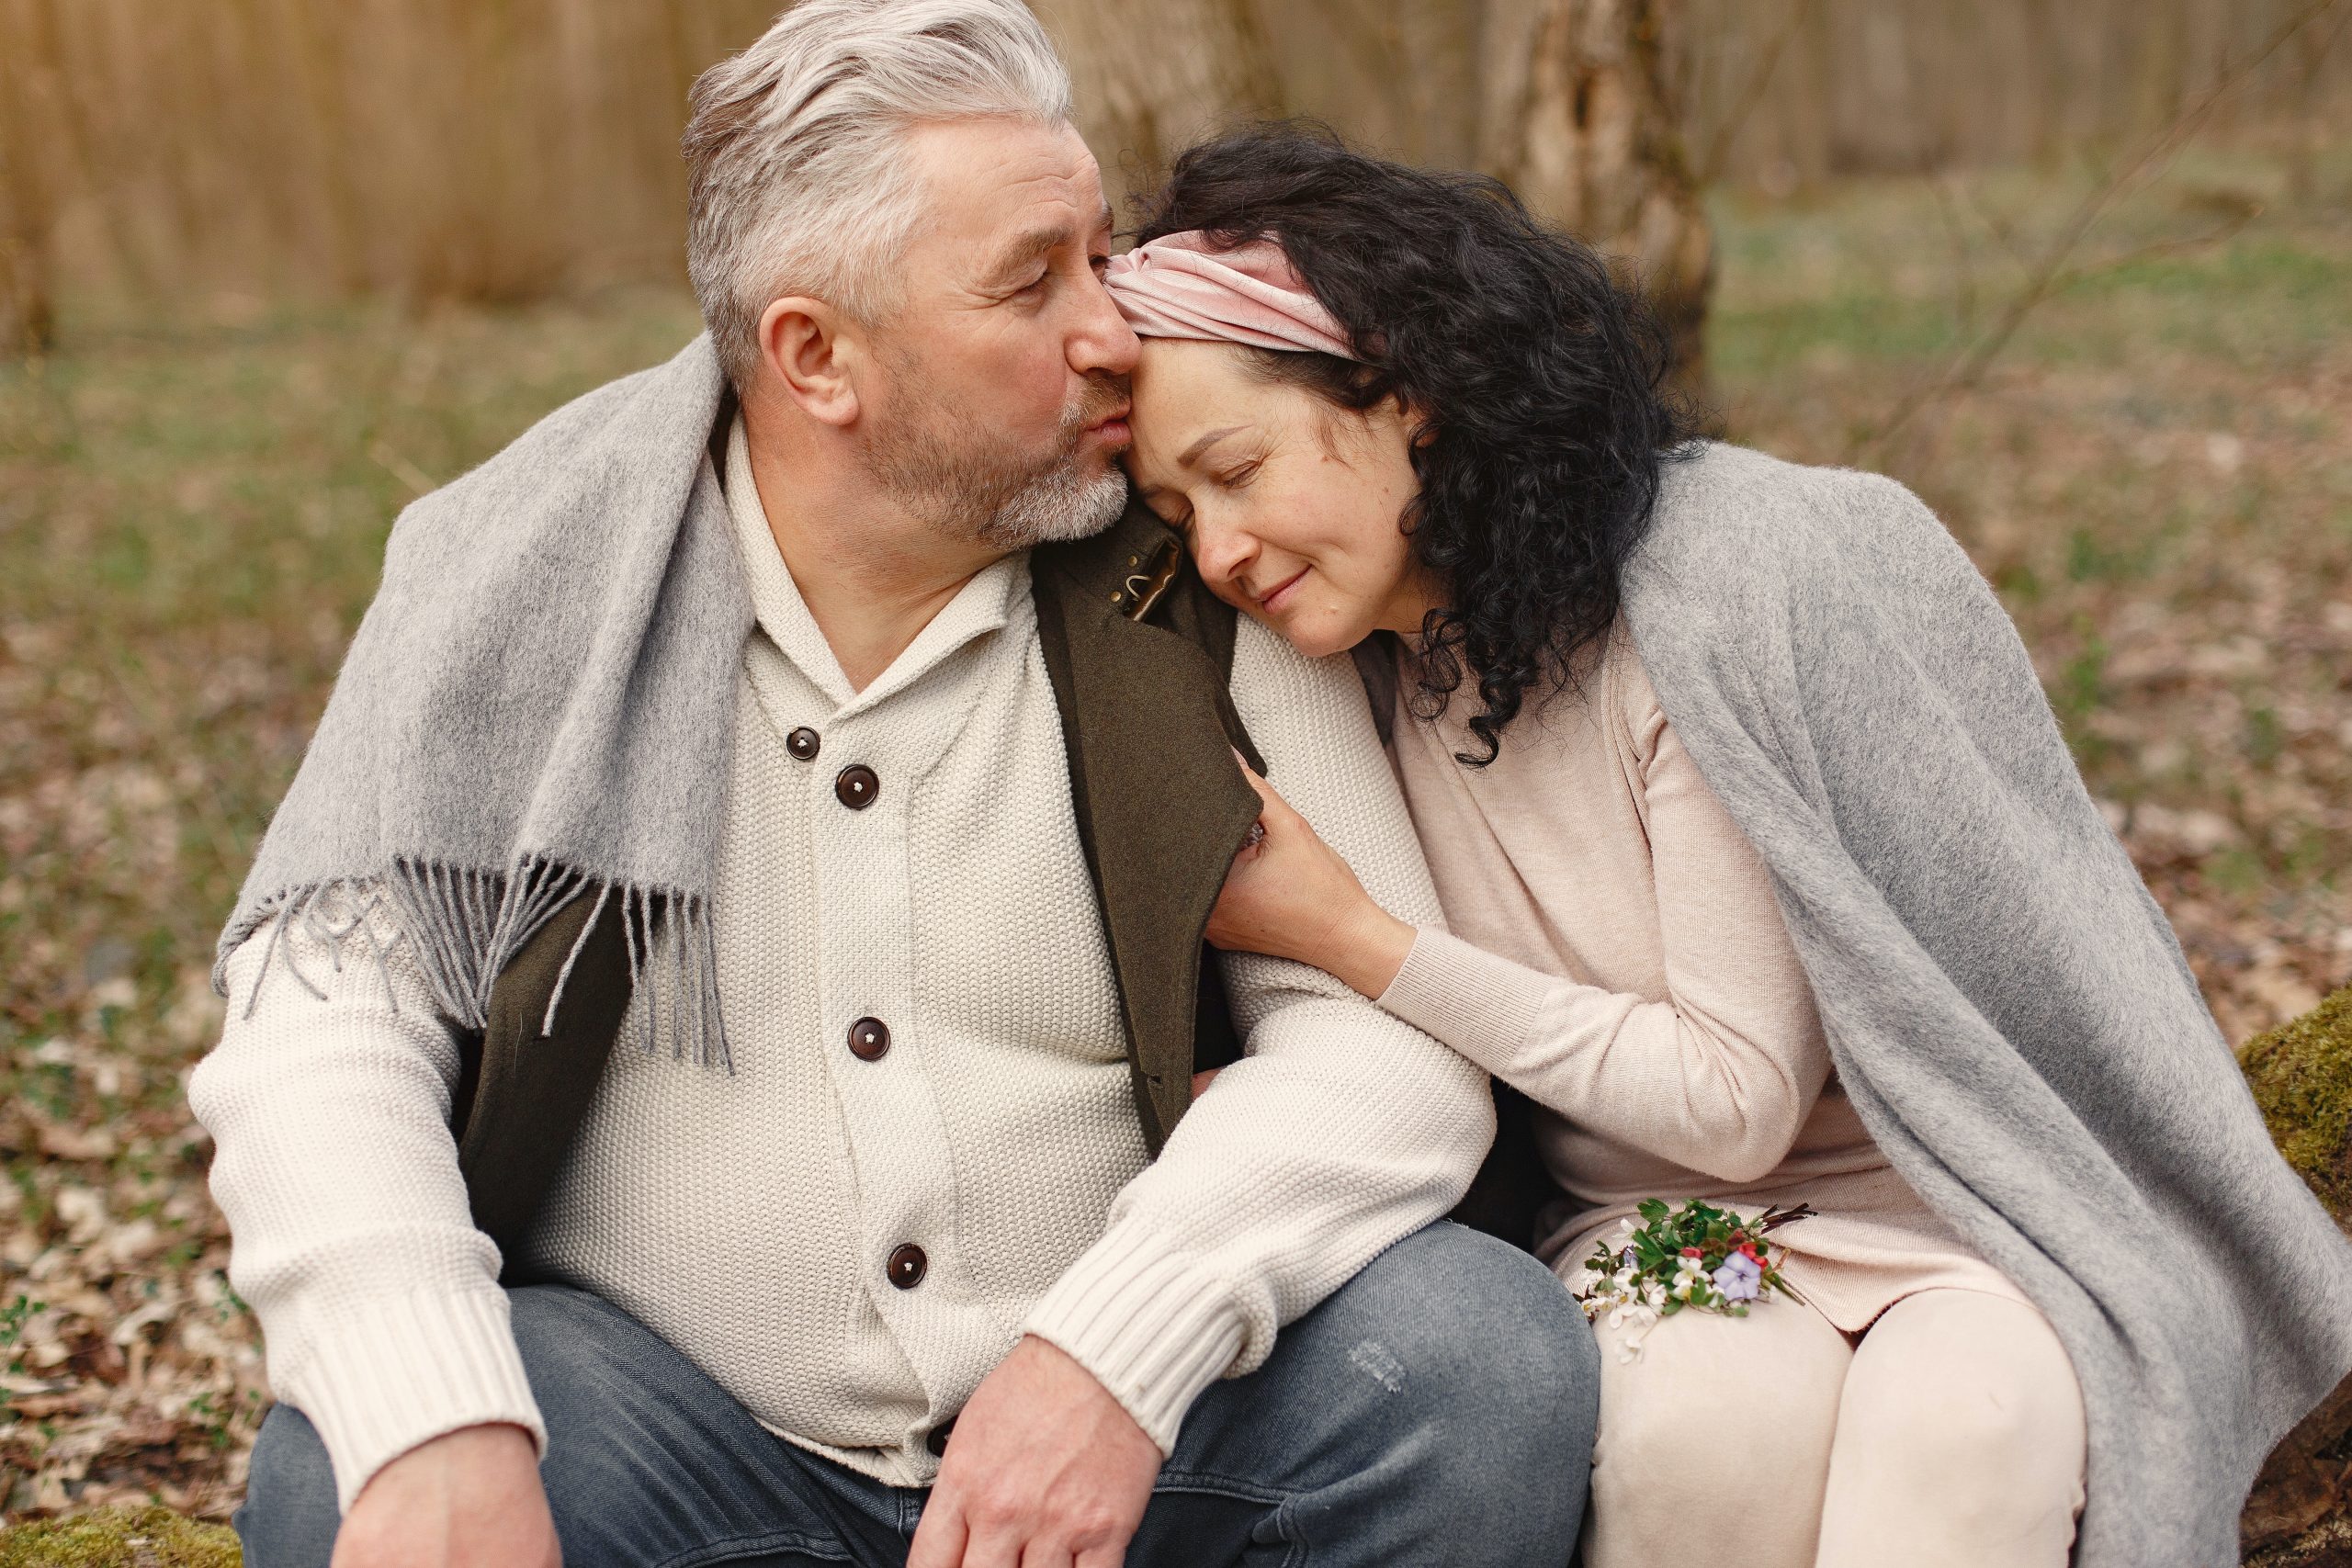 Secretos de las parejas que han perdurado: cómo mantener la pasión y el romance en un matrimonio feliz